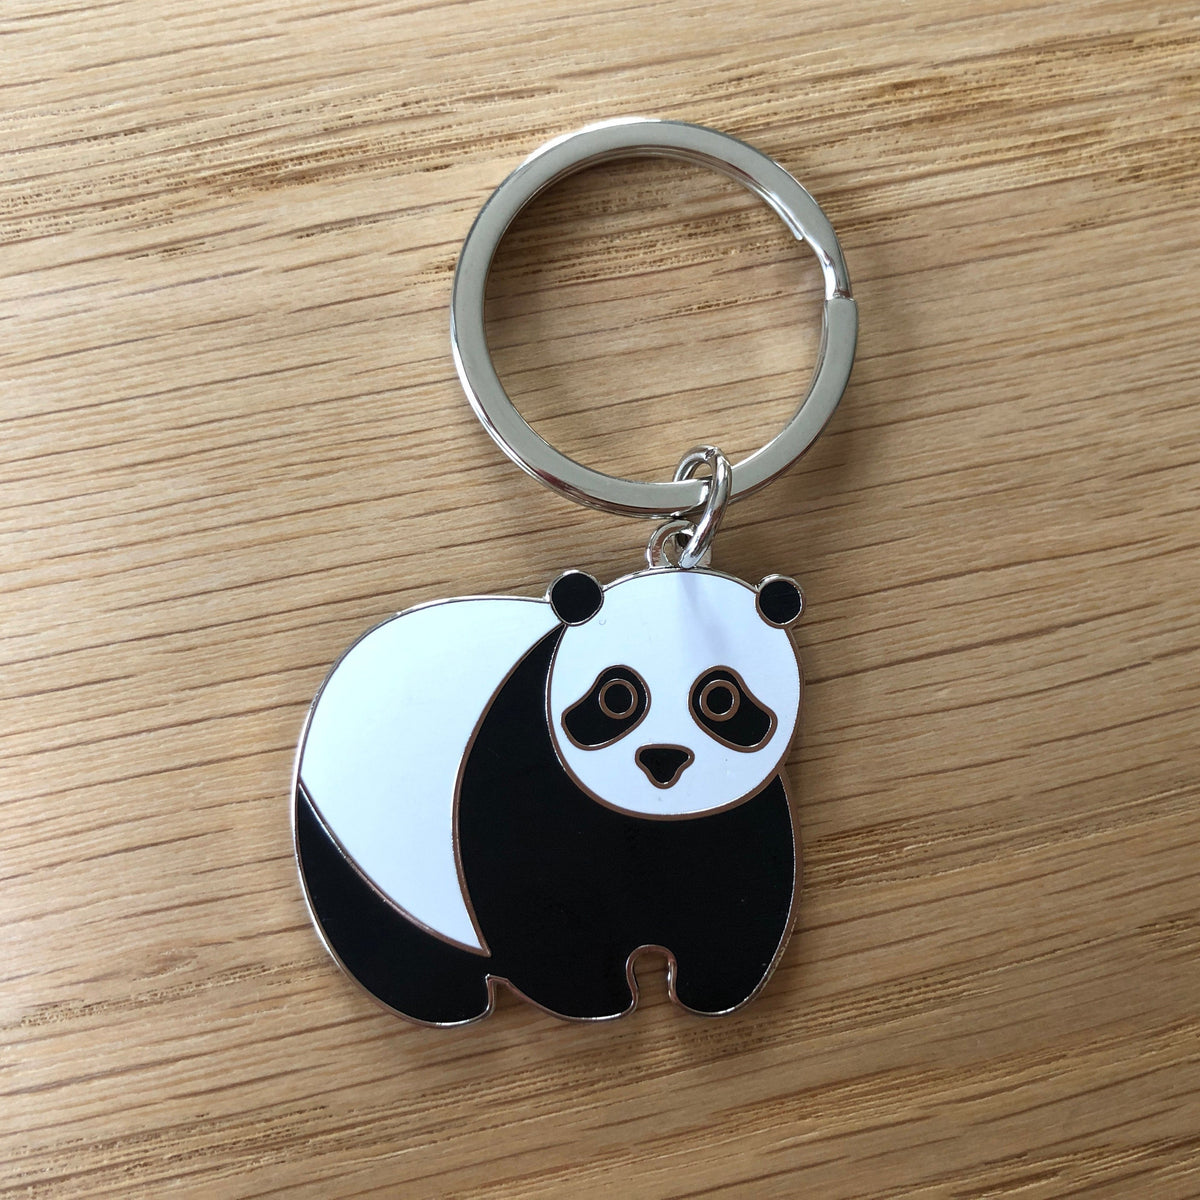 Cute metallic panda key chain / charm for keys & bags at Rs 175.00, Metal  Key Chain